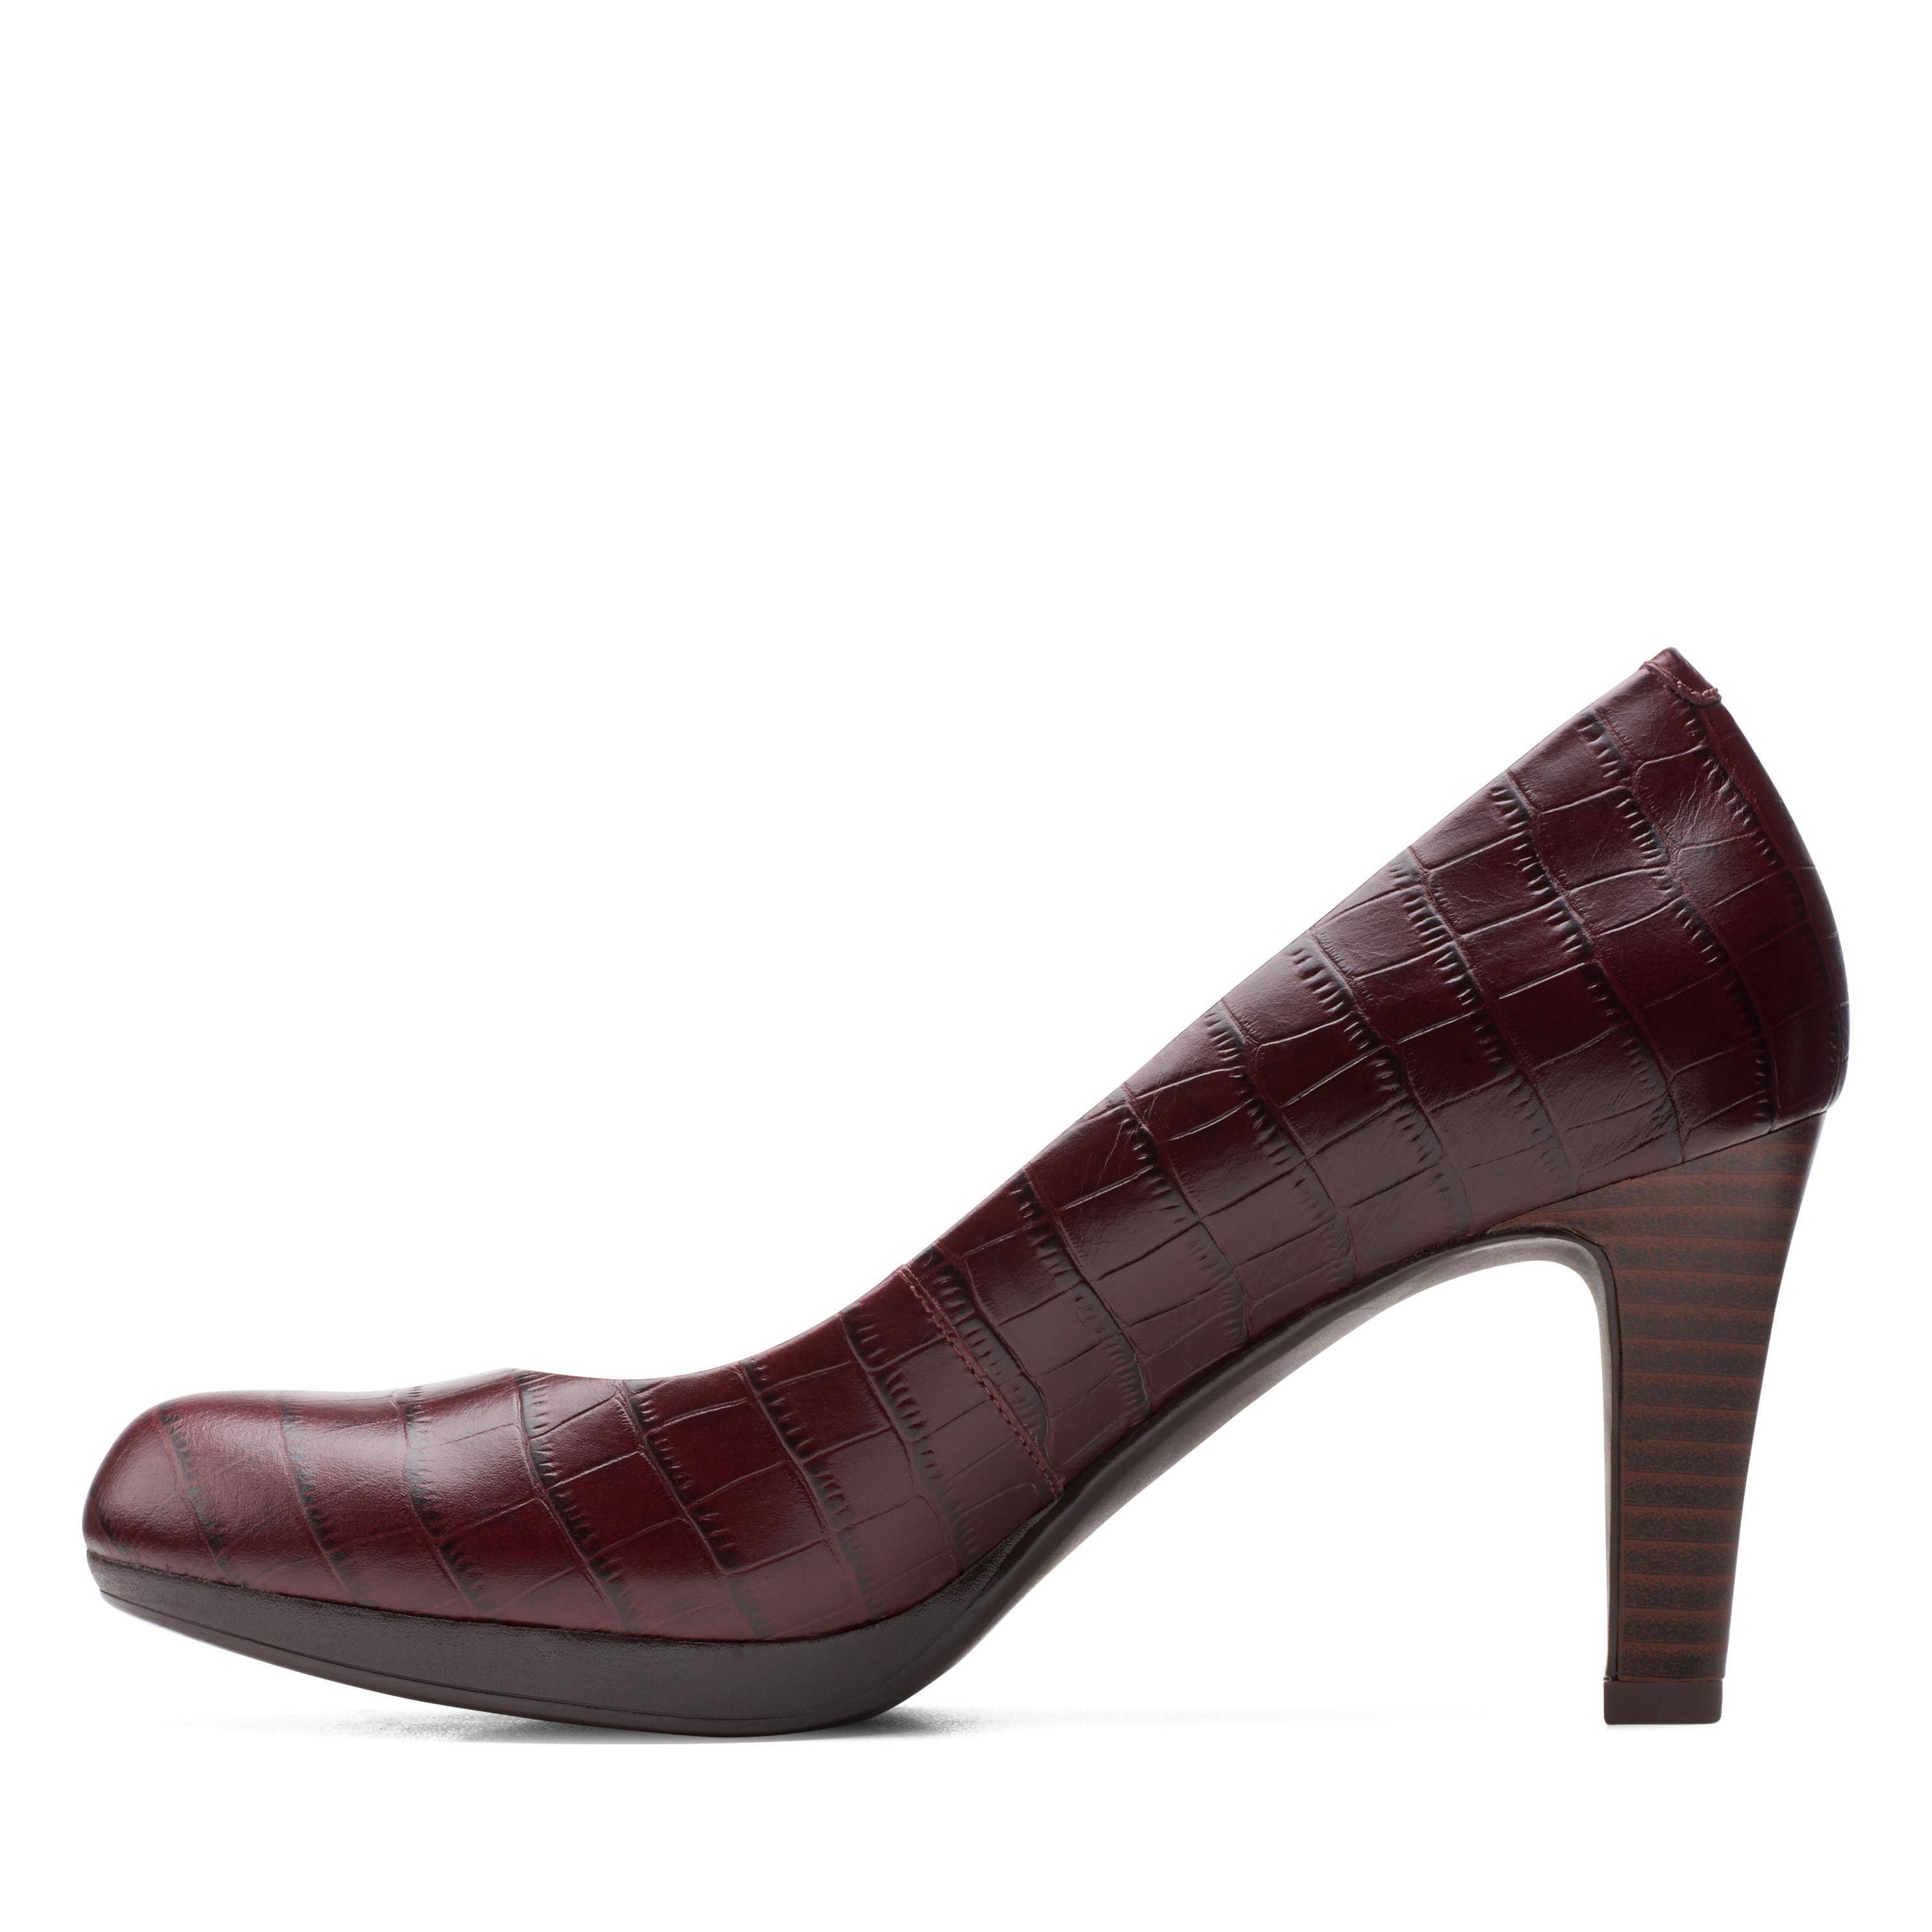 Женские туфли-лодочки Clarks(Adriel Viola 26151330), бордовые, цвет бордовый, размер 39.5 - фото 5